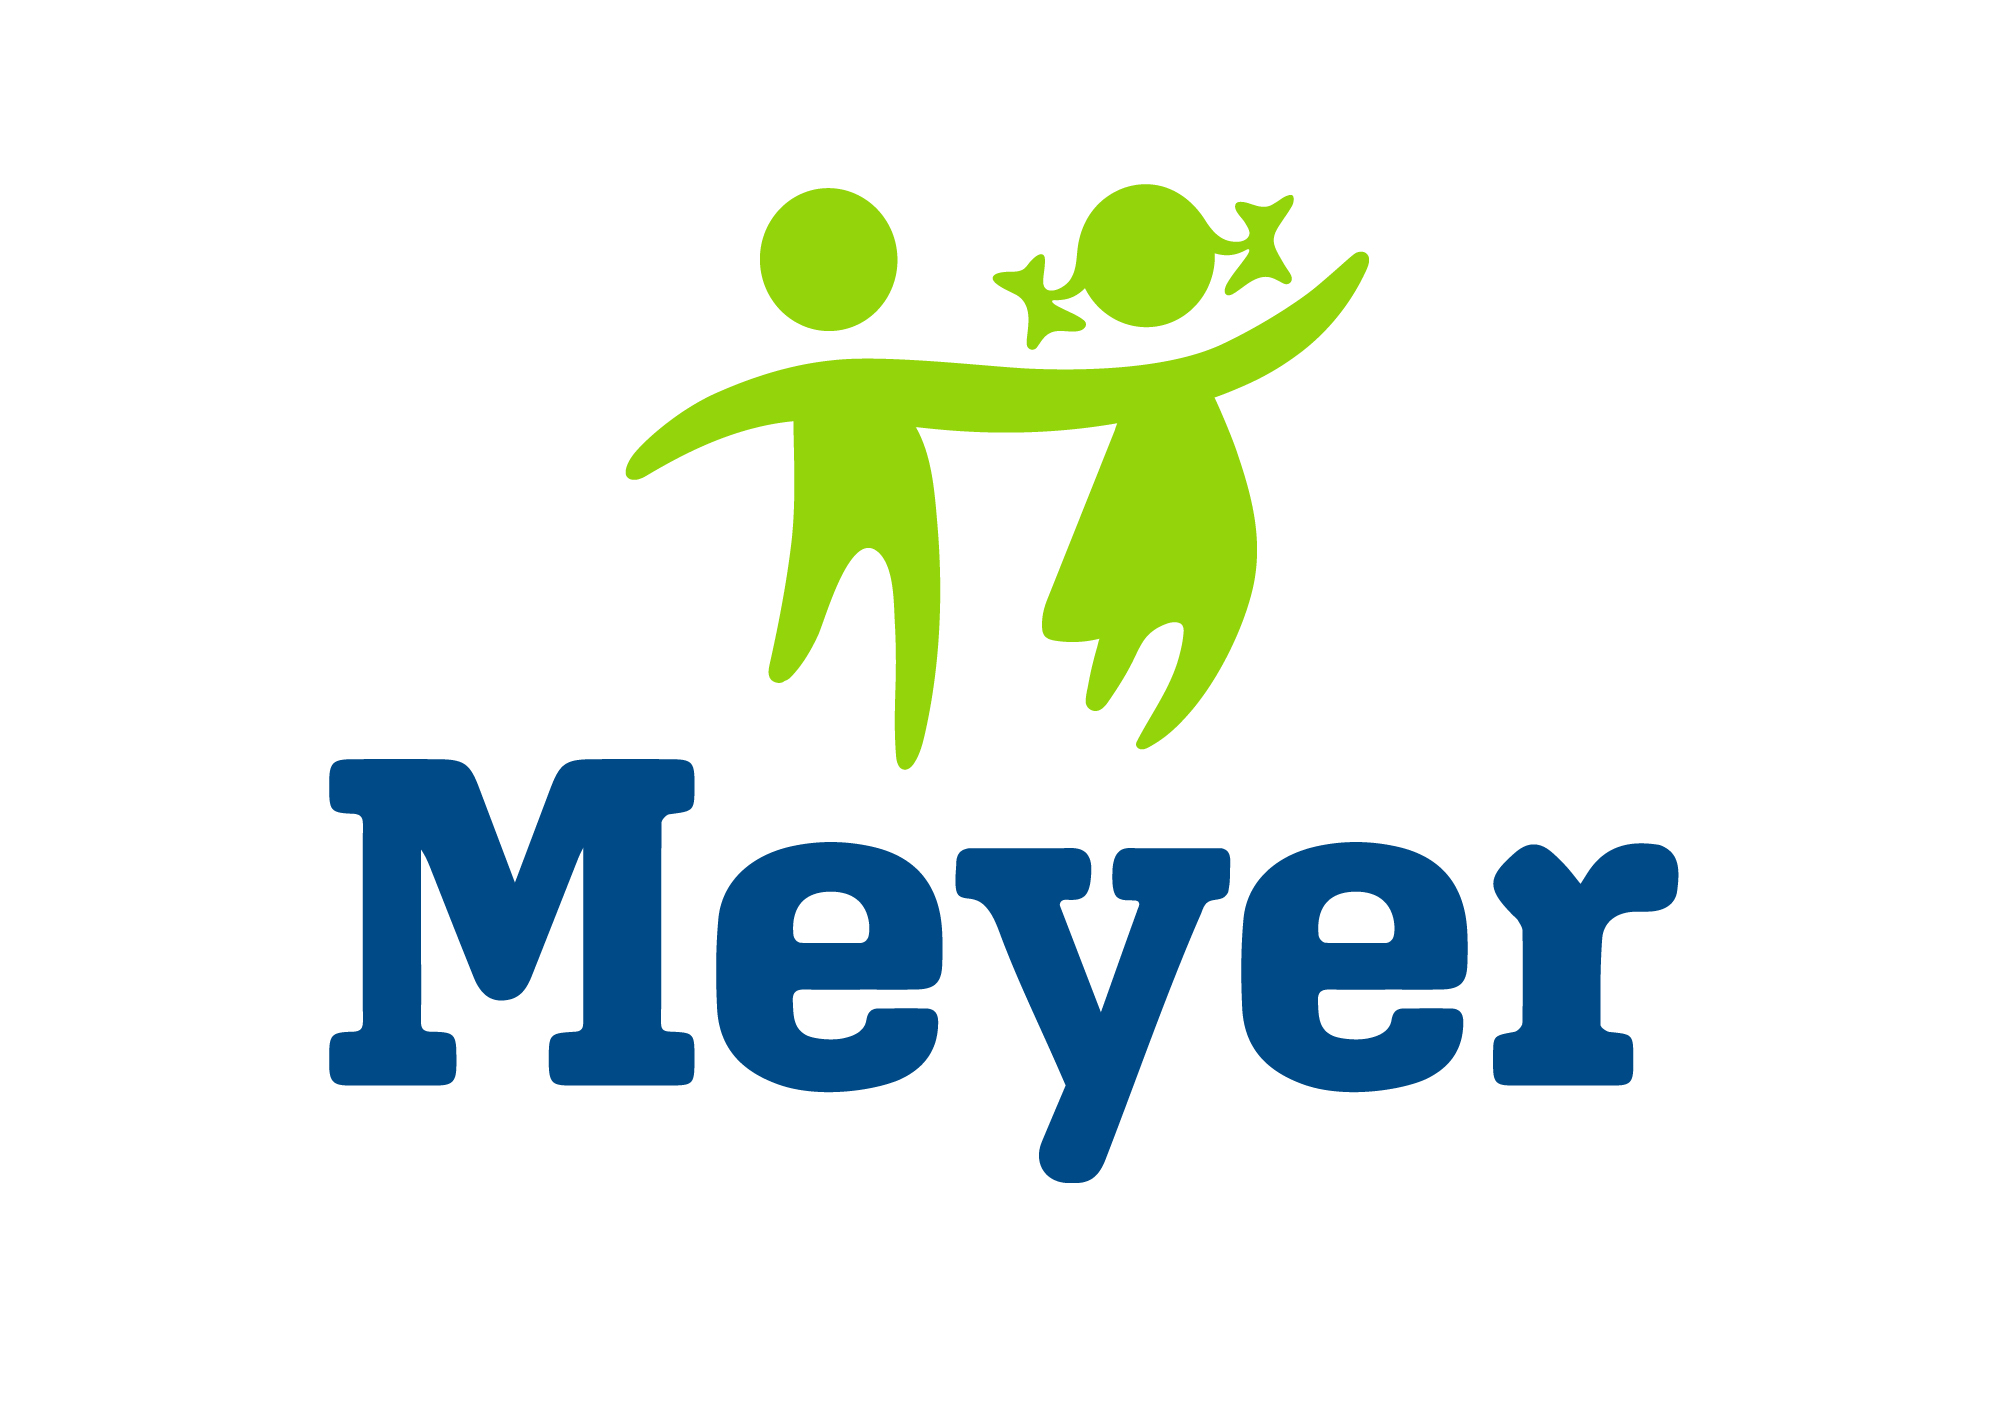 Il nuovo logo del Meyer (Fonte immagine comunicato Meyer)